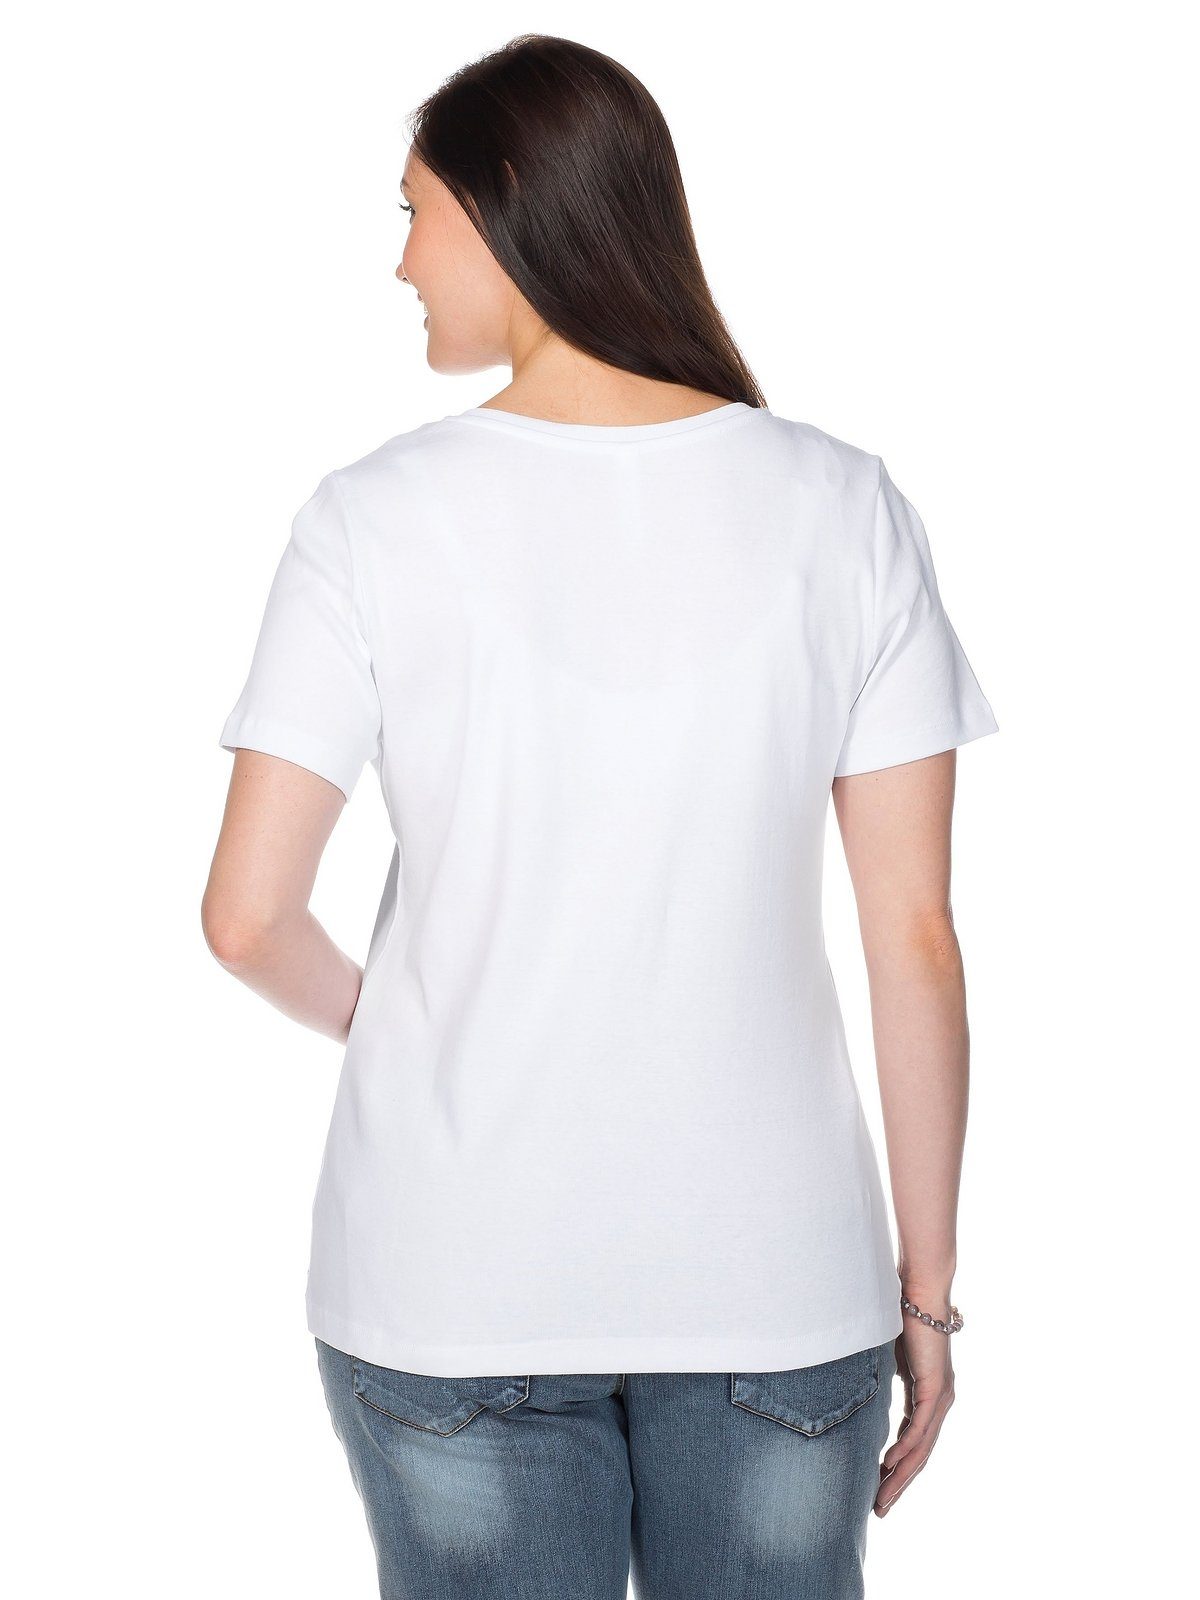 Große T-Shirt Qualität fein gerippter Größen aus Sheego weiß